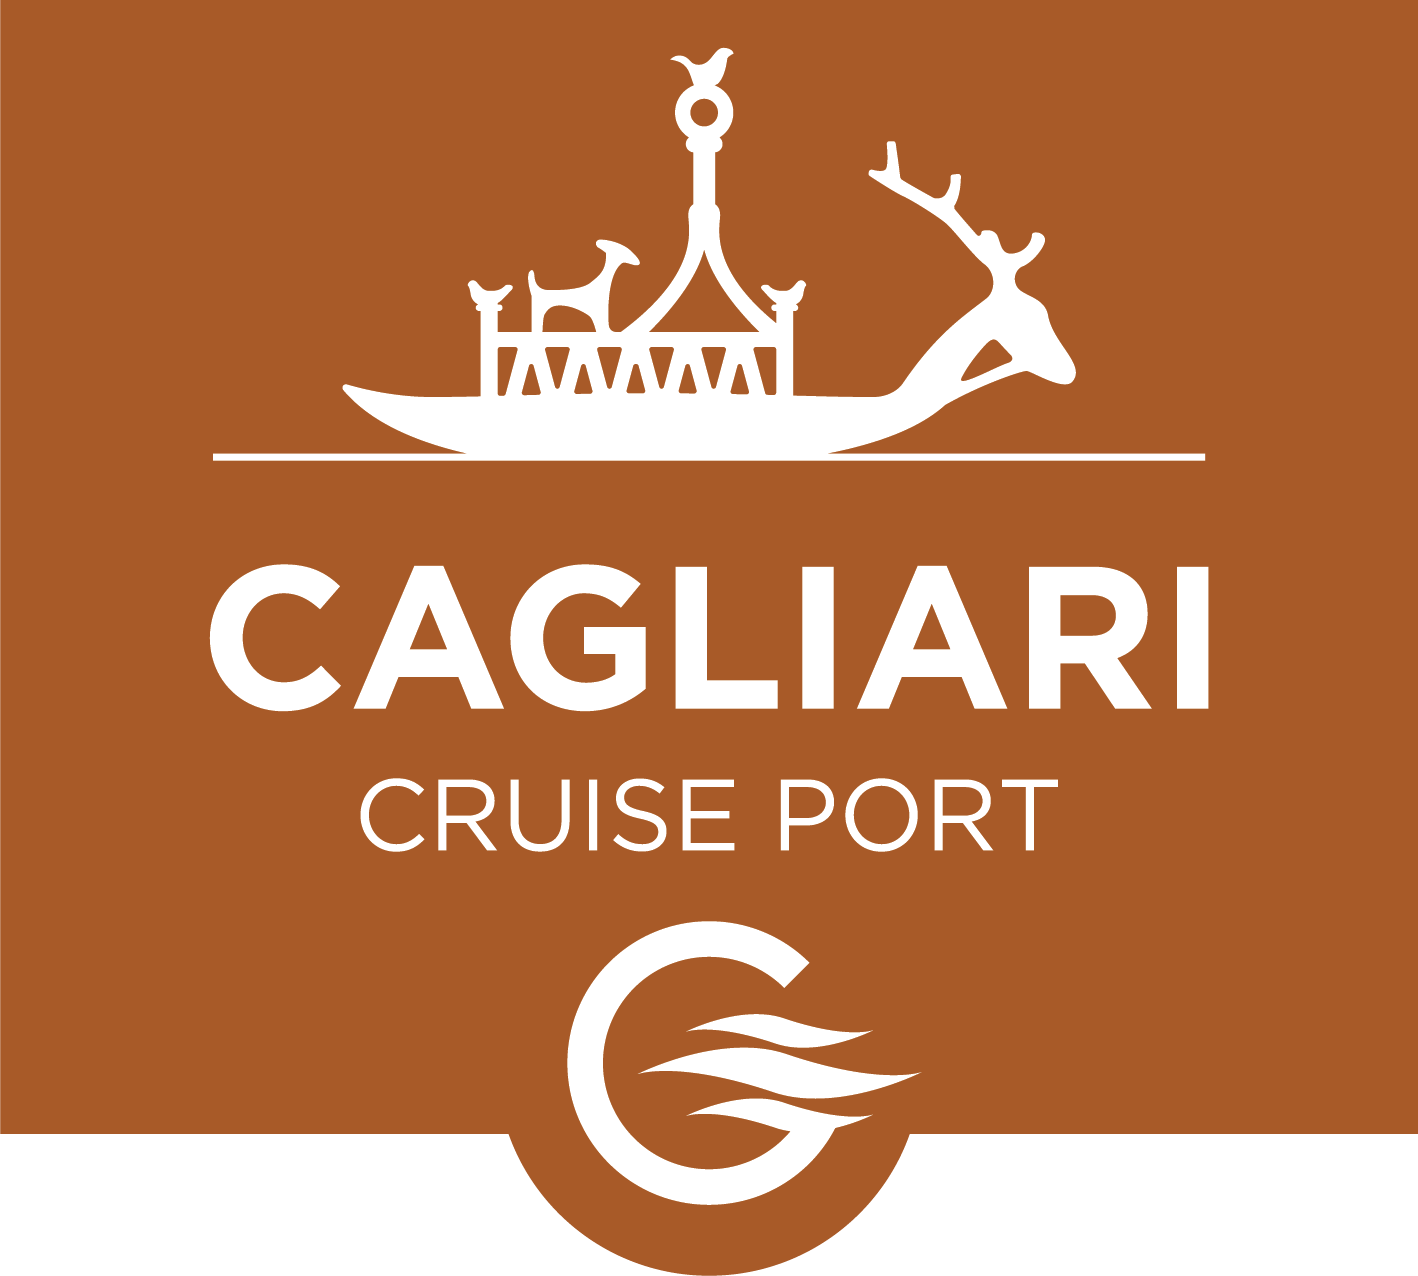 Cagliari Cruise Port srl